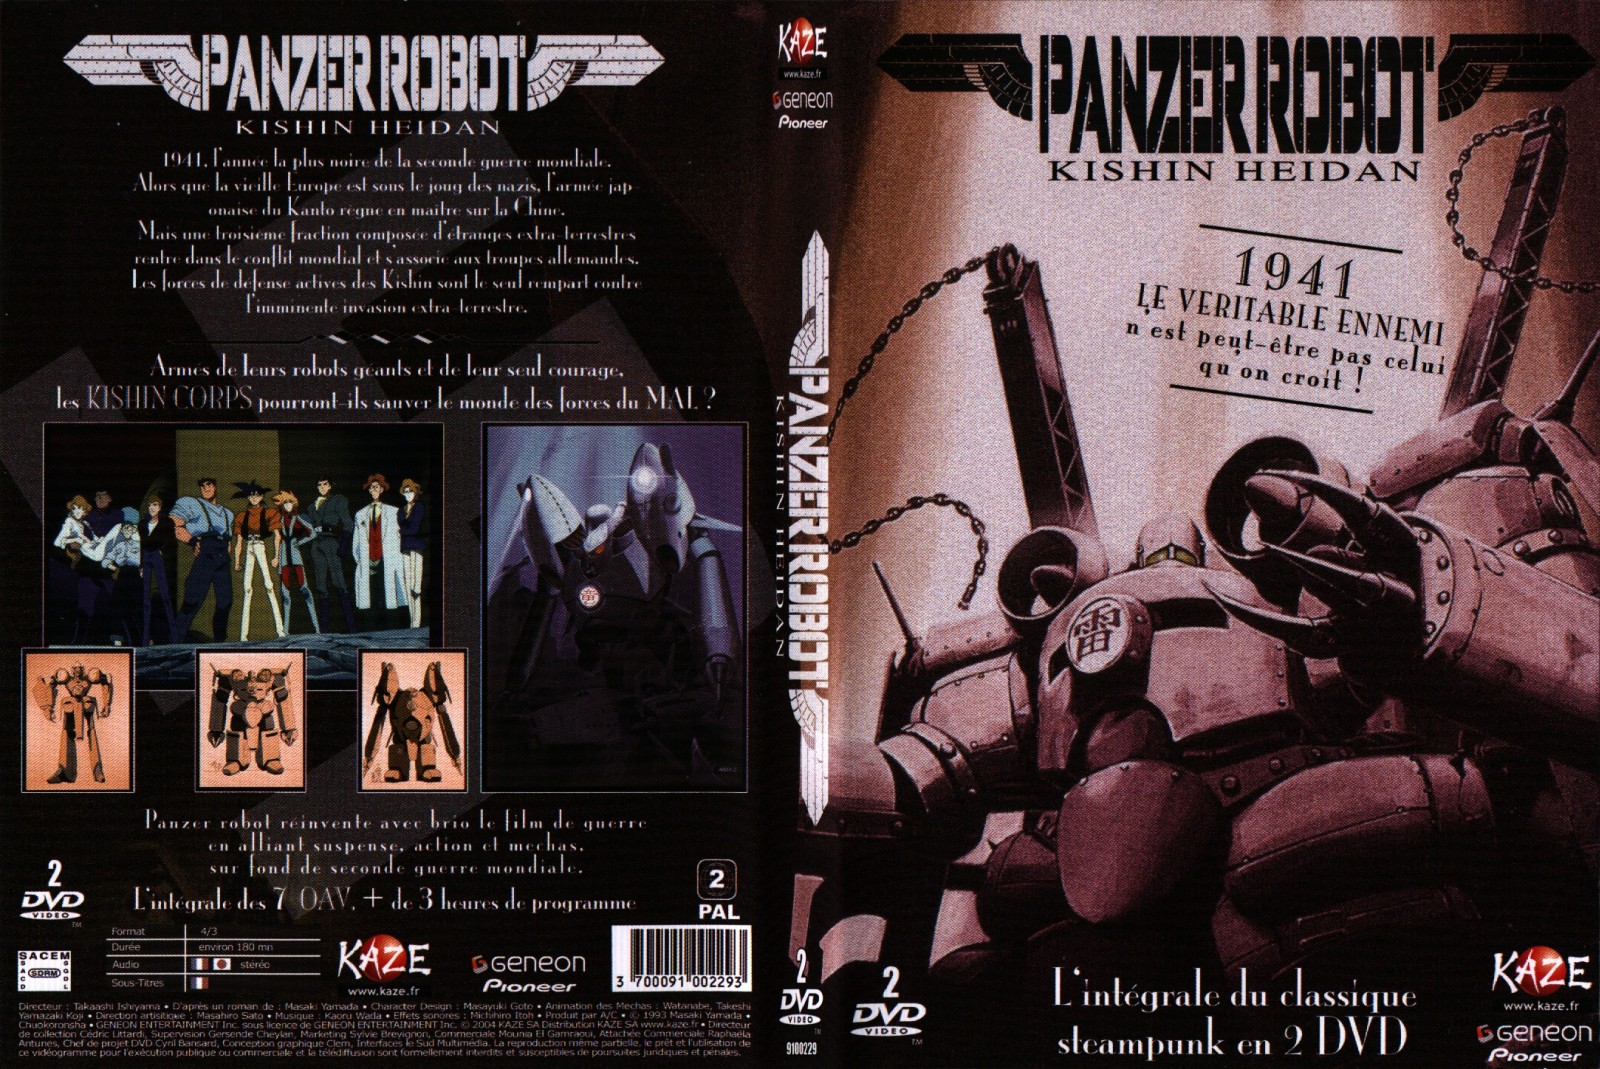 Jaquette DVD Panzer robot